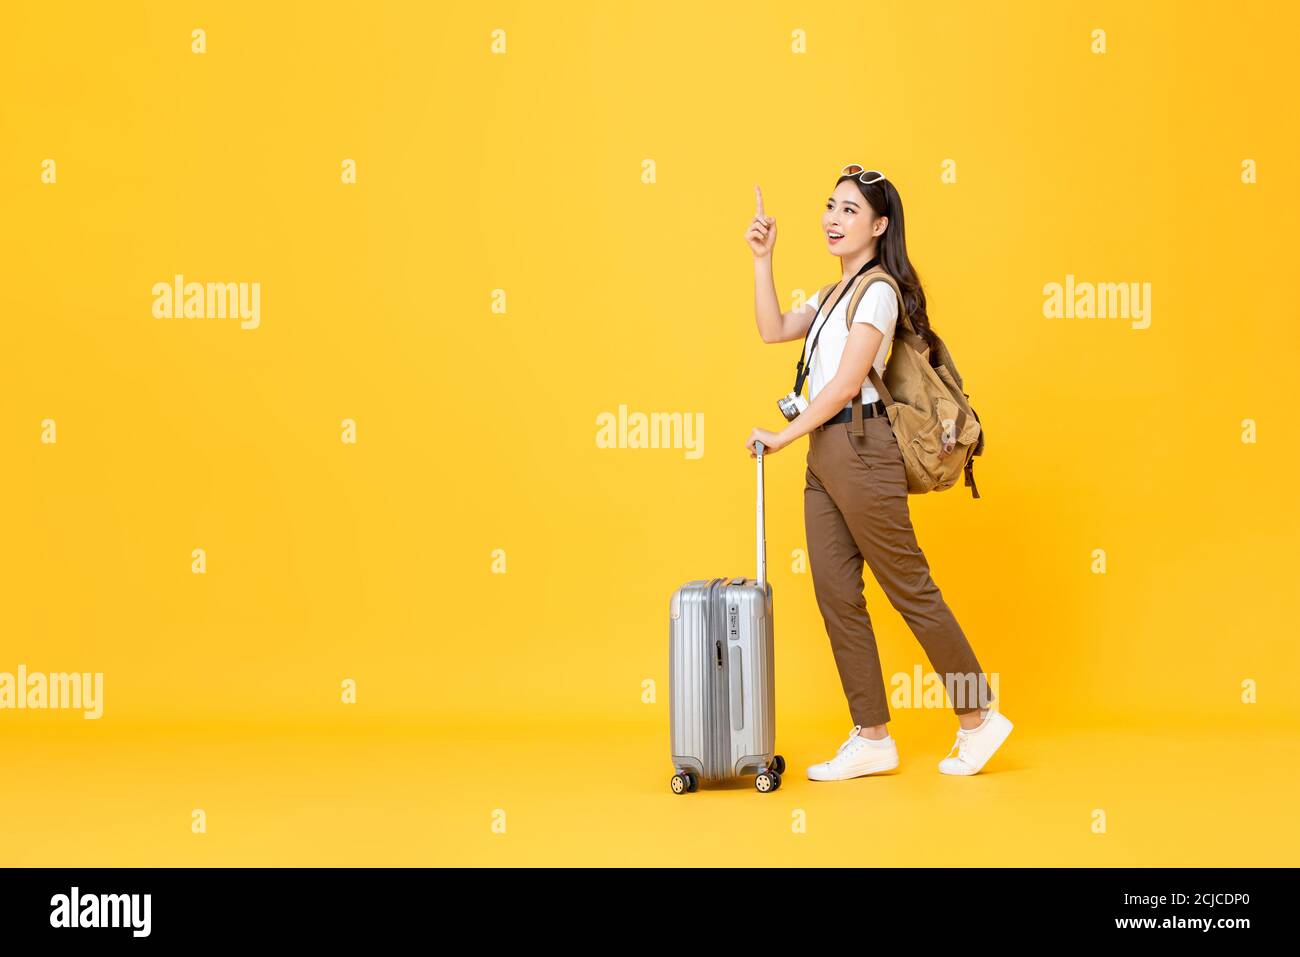 In voller Länge Reise Konzept Porträt von schönen lächelnden jungen asiatischen Frau Tourist mit Trolley-Tasche zeigt nach oben isoliert auf bunt Gelbes Studio-Bac Stockfoto